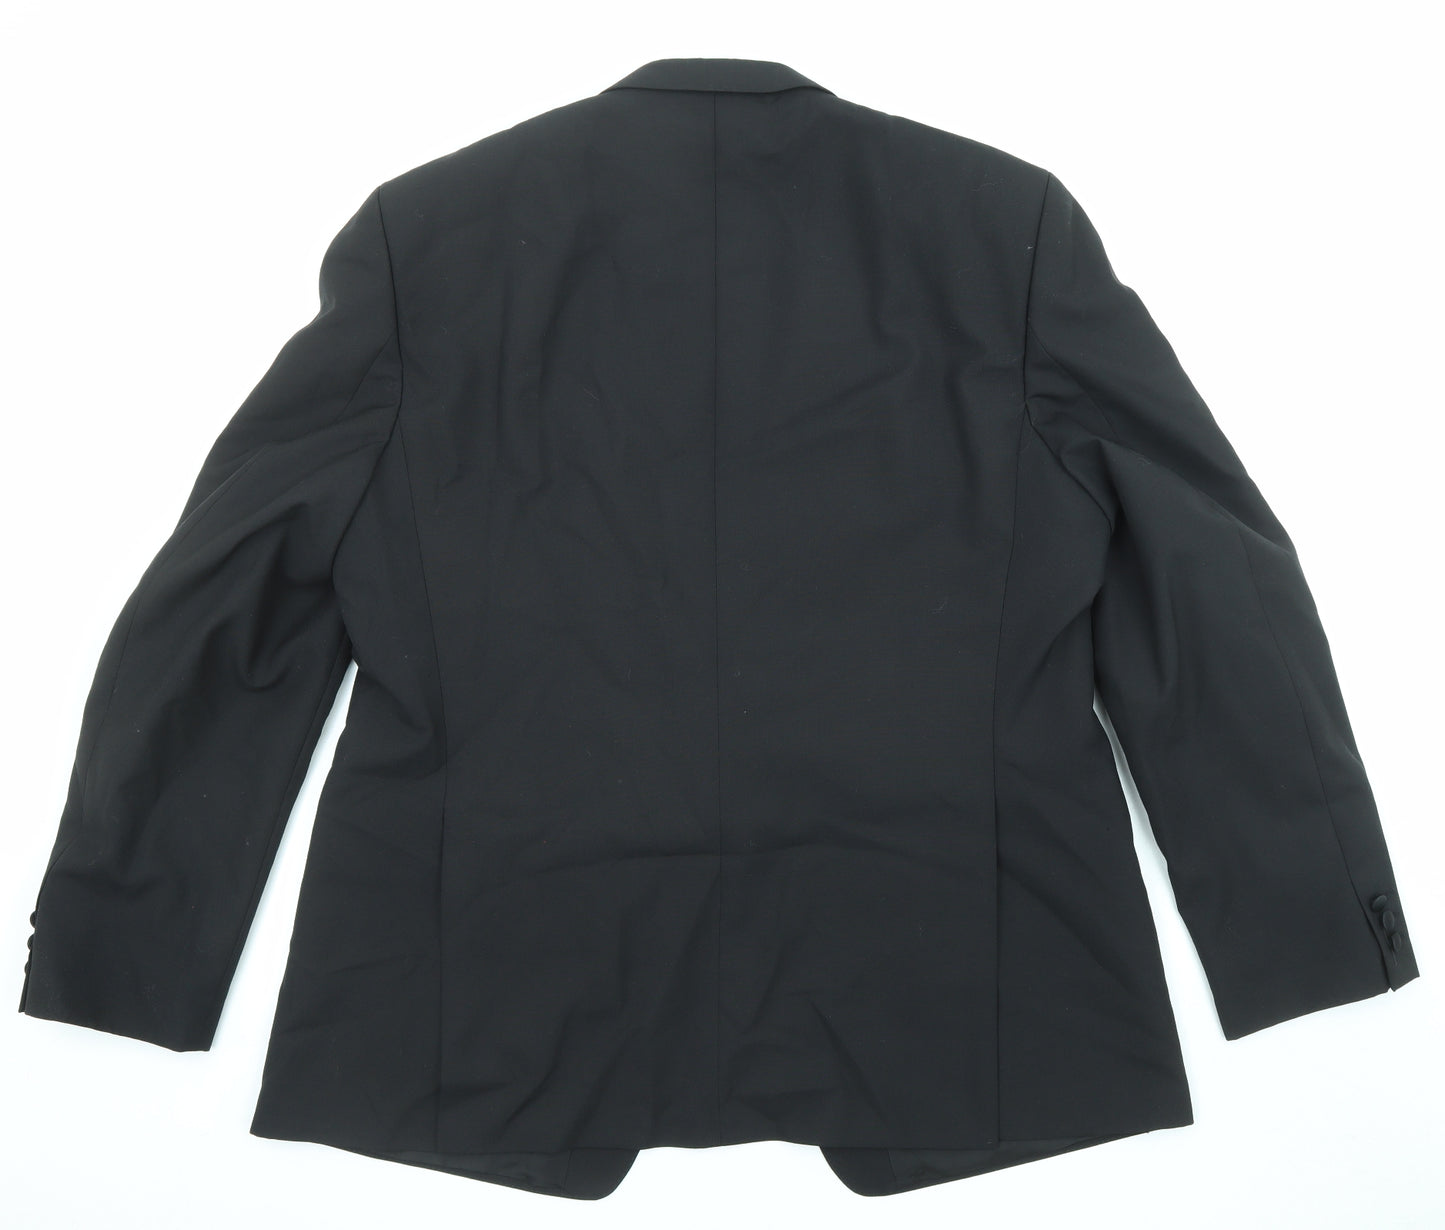 Hacker Mens Black Polyester Jacket Suit Jacket Size 48 Regular